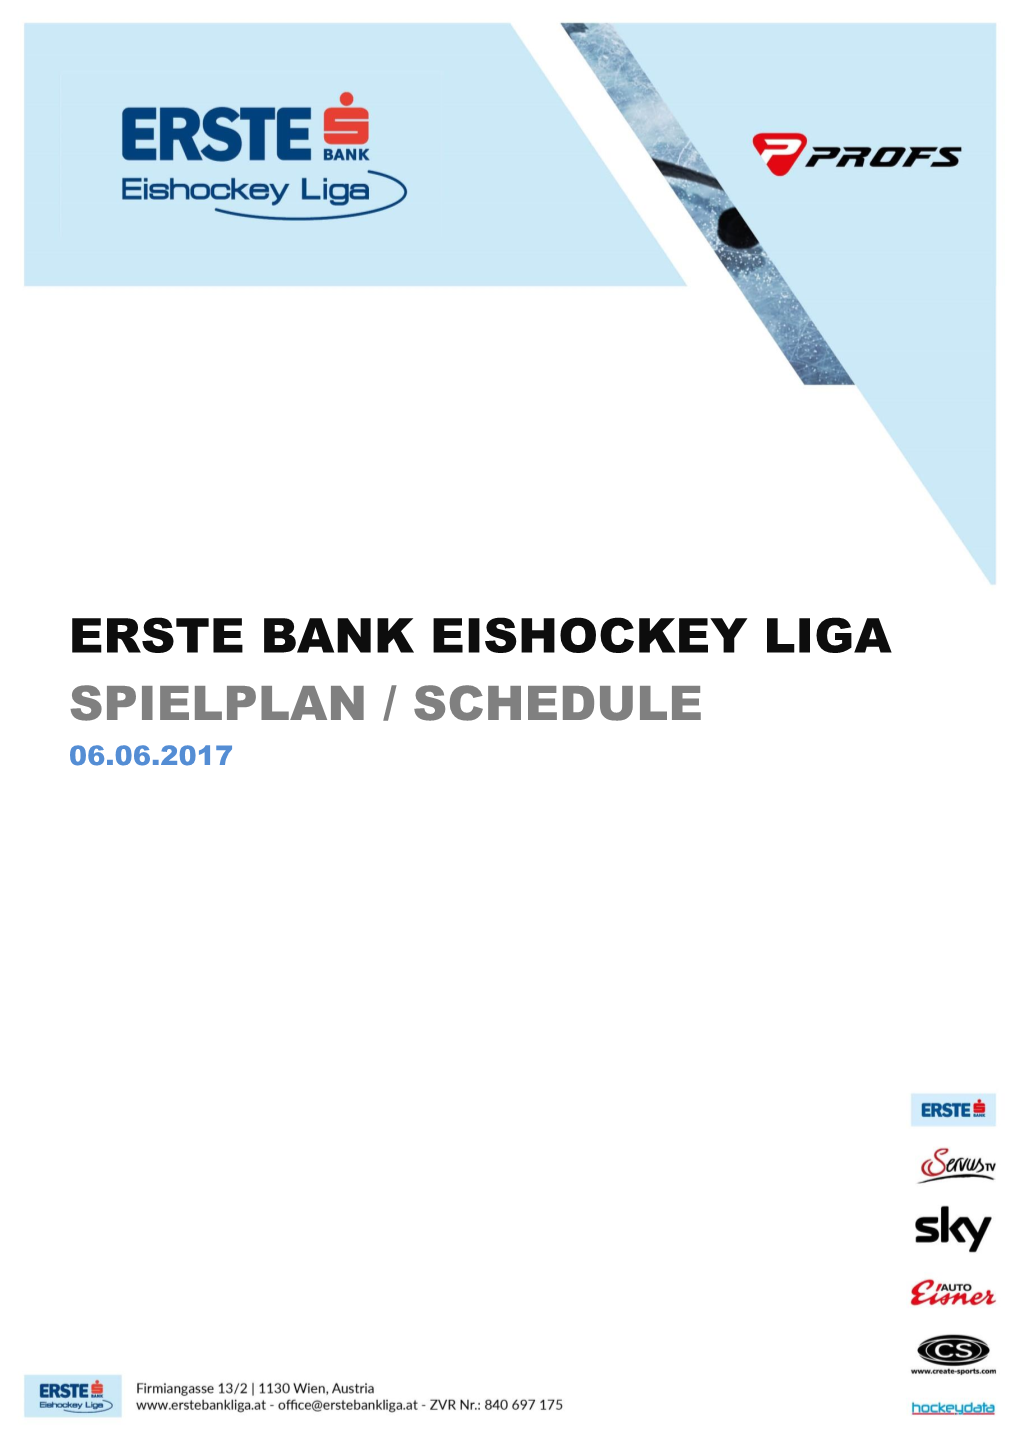 Erste Bank Eishockey Liga Spielplan / Schedule